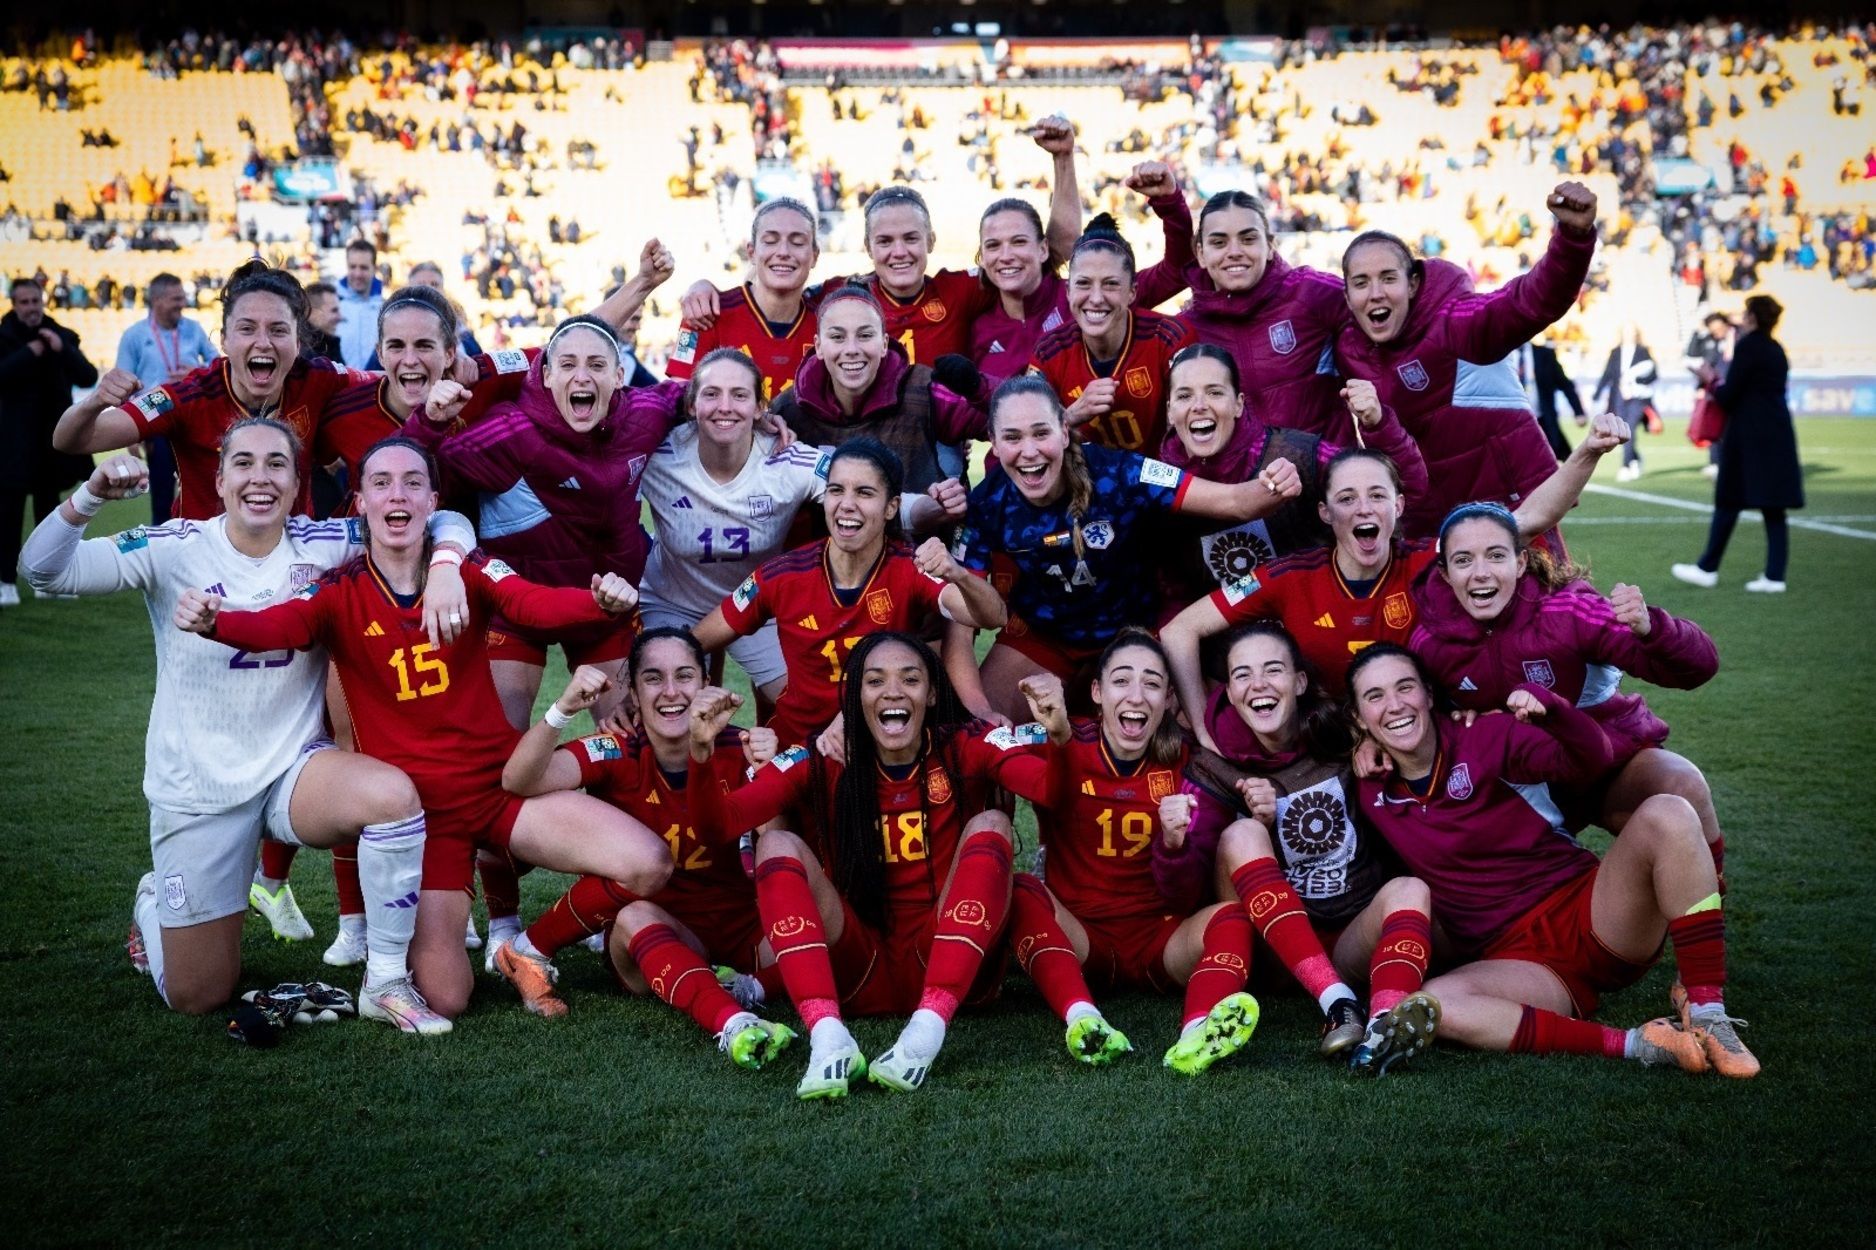 Momento histórico para el deporte: la Selección Española Femenina de fútbol gana el Mundial